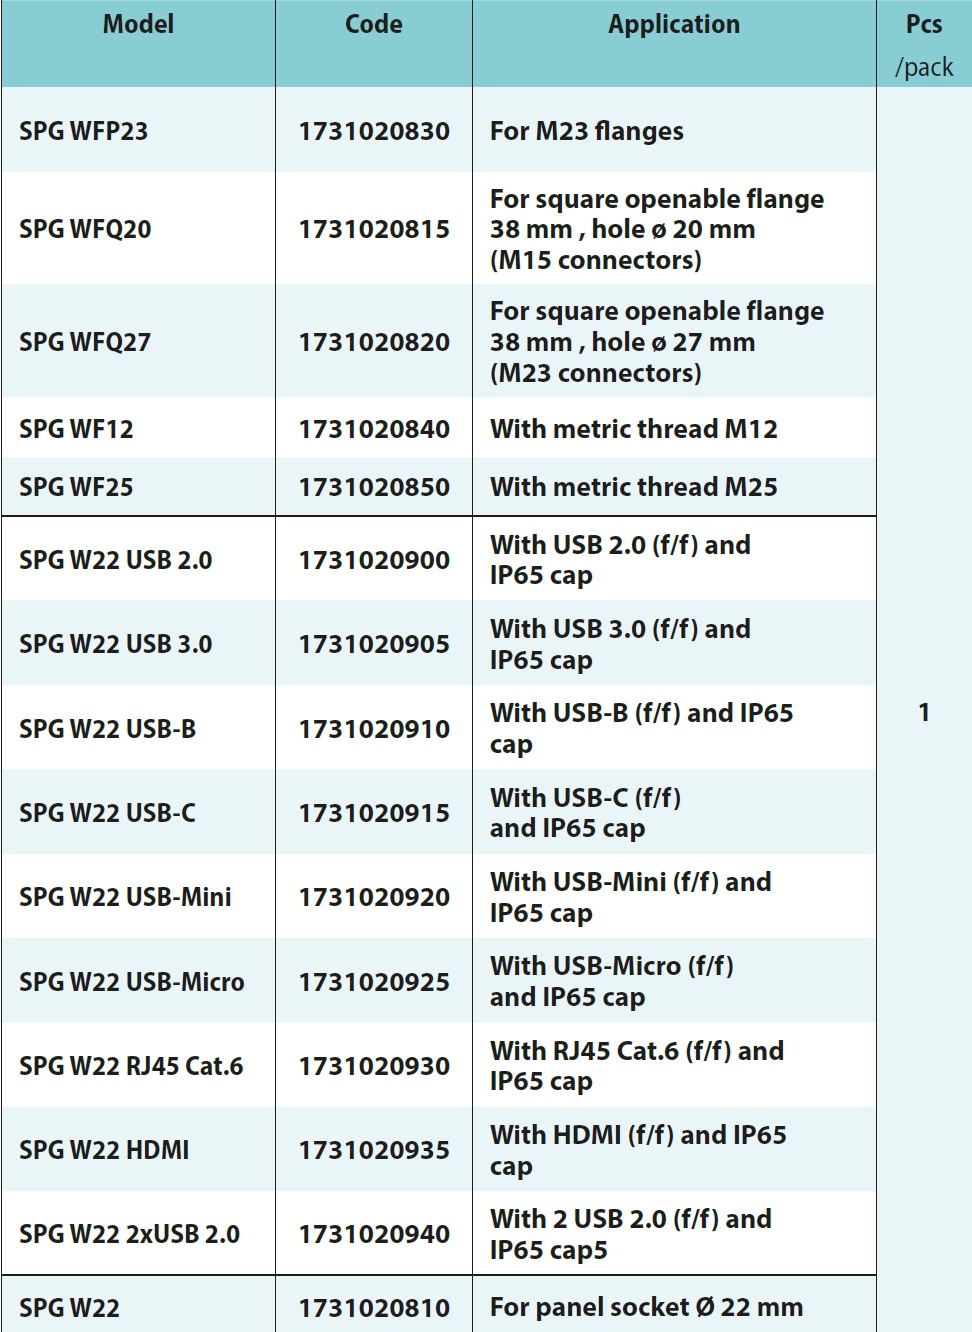 SPG WFP23, SPG WFQ20, SPG WFQ27, SPG WF12, SPG WF25, SPG W22 USB 2,0 SPG W22 USB 3,0 SPG W22 USB-B, SPG W22 USB-C SPG, W22 USB-Mini, SPG W22 USB-Micro, SPG W22 RJ45 Cat.6, SPG W22 HDMI, SPG W22 2xUSB 2,0 